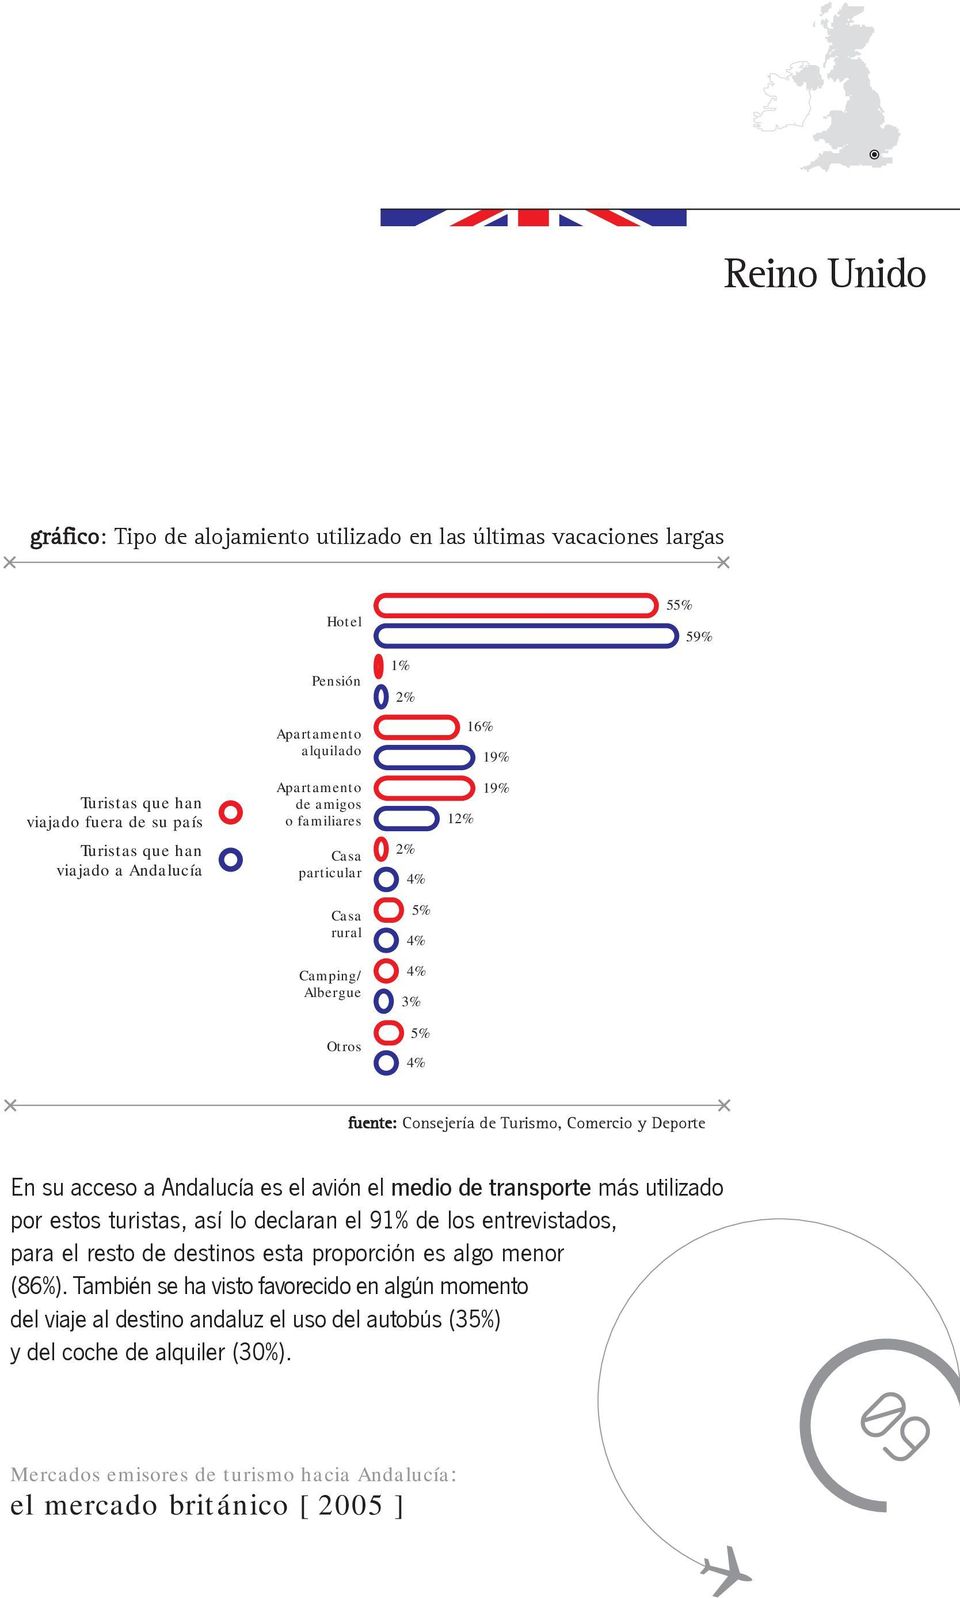 59% En su acceso a Andalucía es el avión el medio de transporte más utilizado por estos turistas, así lo declaran el 91% de los entrevistados, para el resto de destinos